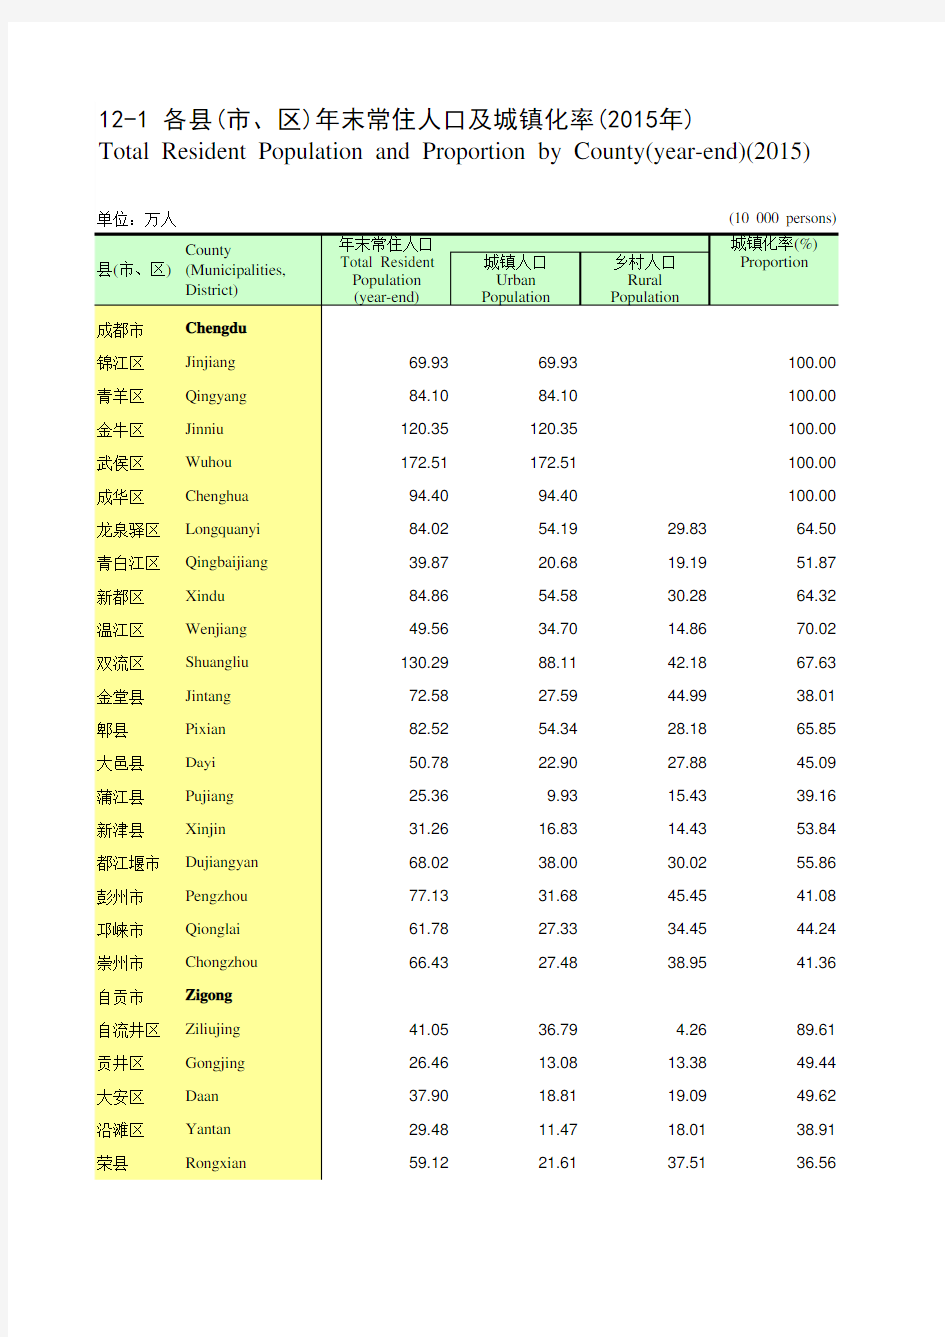 四川统计年鉴2016社会经济发展指标：各县(市区)年末常住人口及城镇化率(2015年)